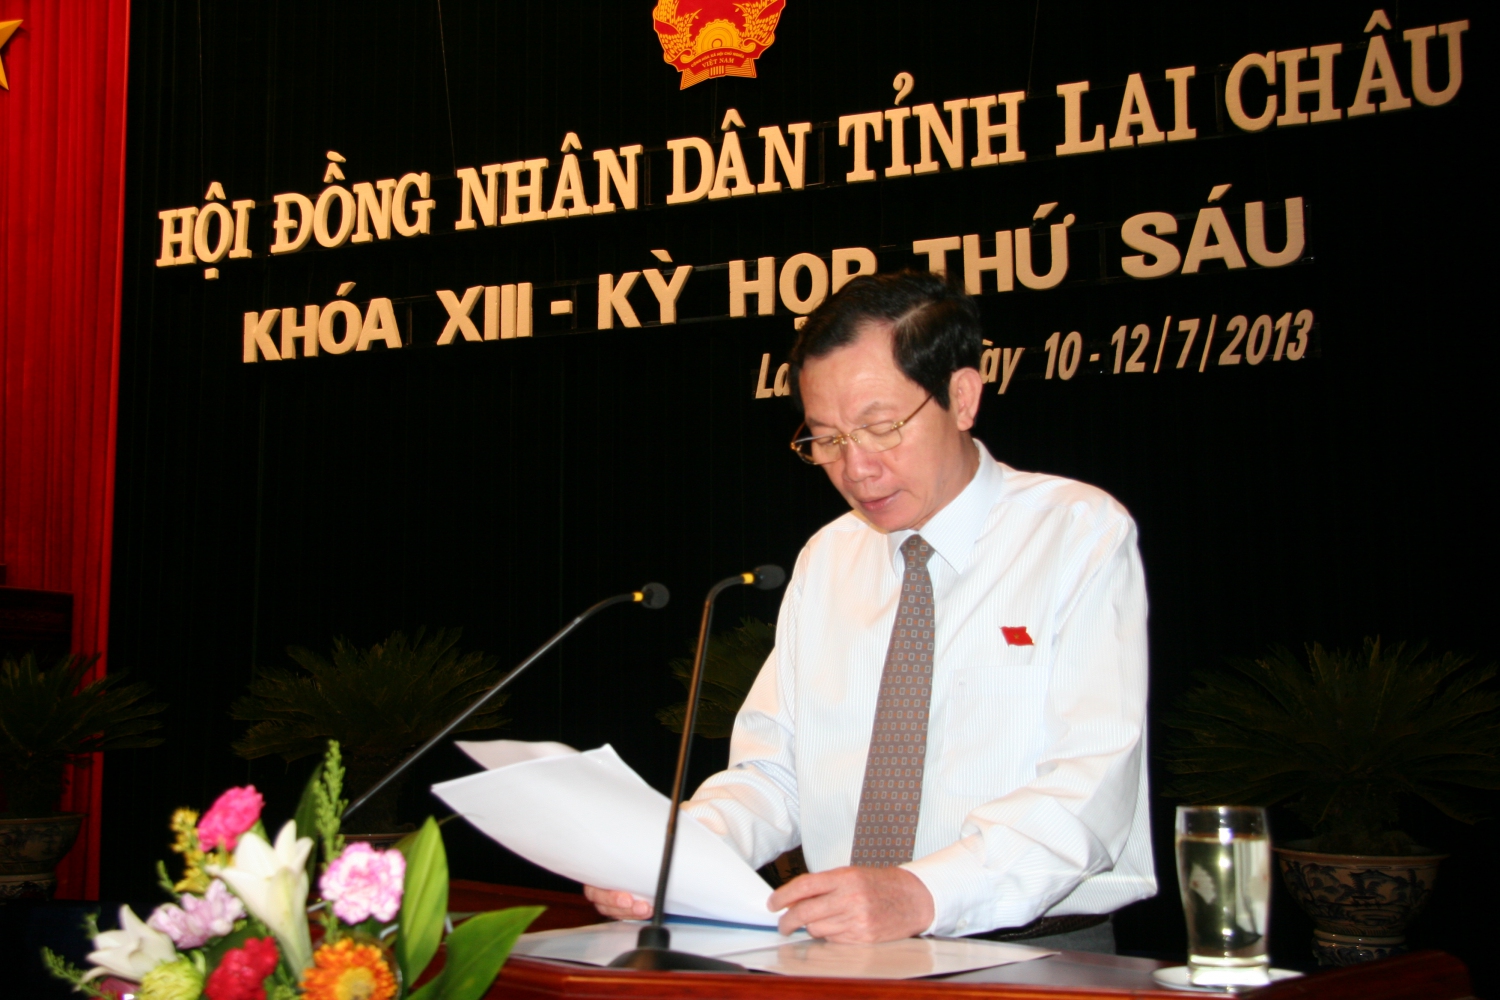                                Ảnh: Đồng chí Lò Văn Giàng - Ủy viên Trung ương Đảng, Bí thư Tỉnh ủy phát biểu tại kỳ họp